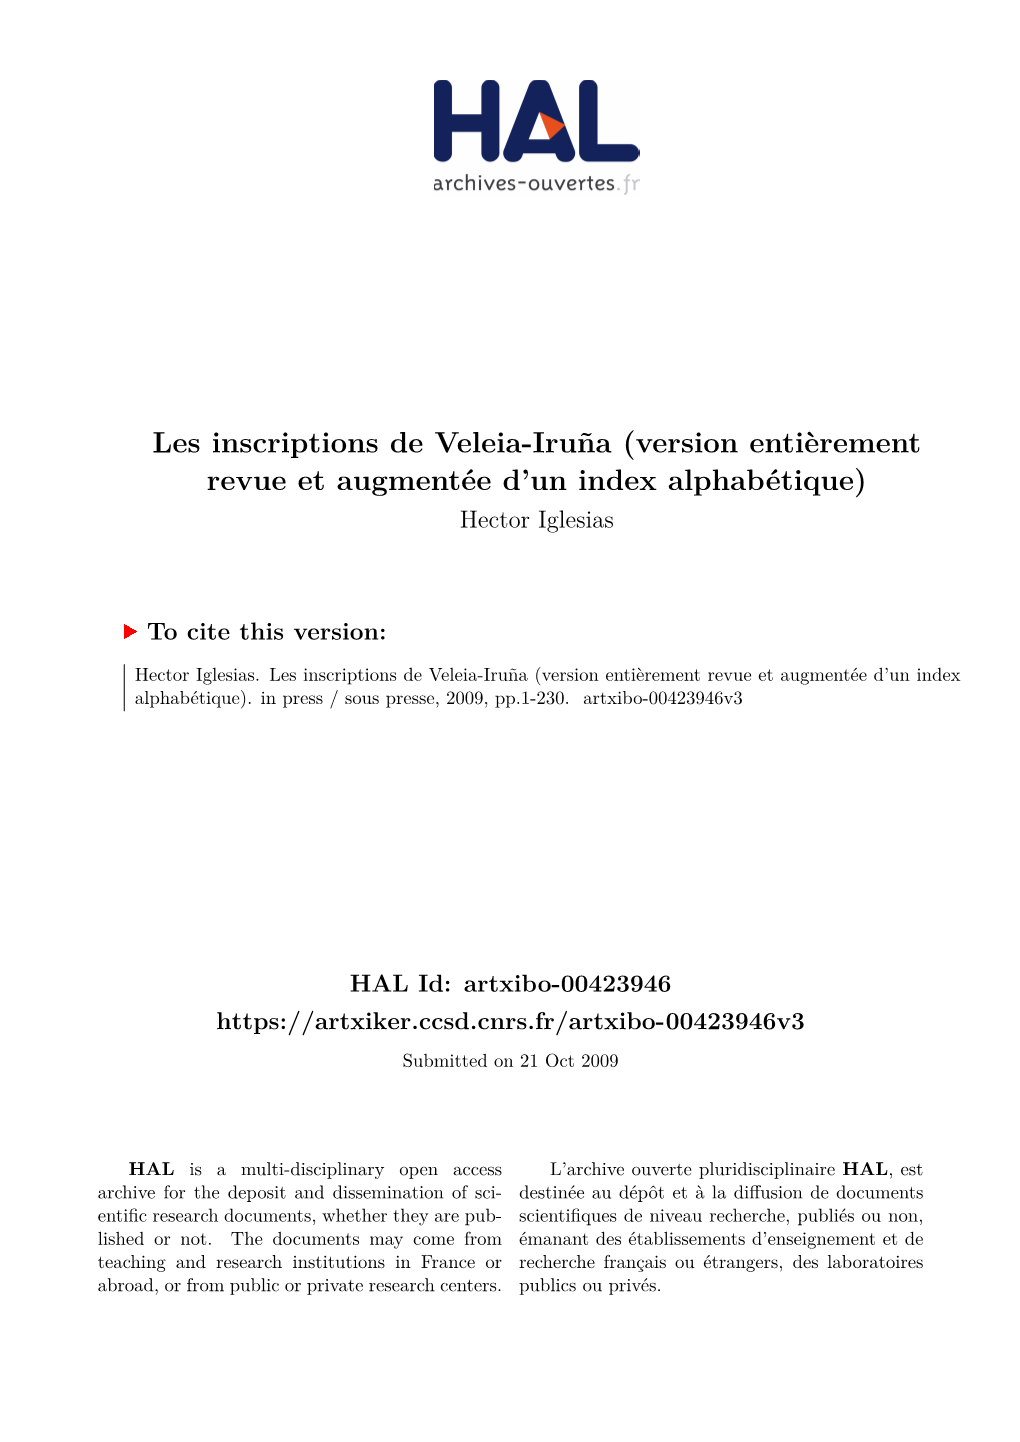 Les Inscriptions De Veleia-Iruña (Version Entièrement Revue Et Augmentée D’Un Index Alphabétique) Hector Iglesias